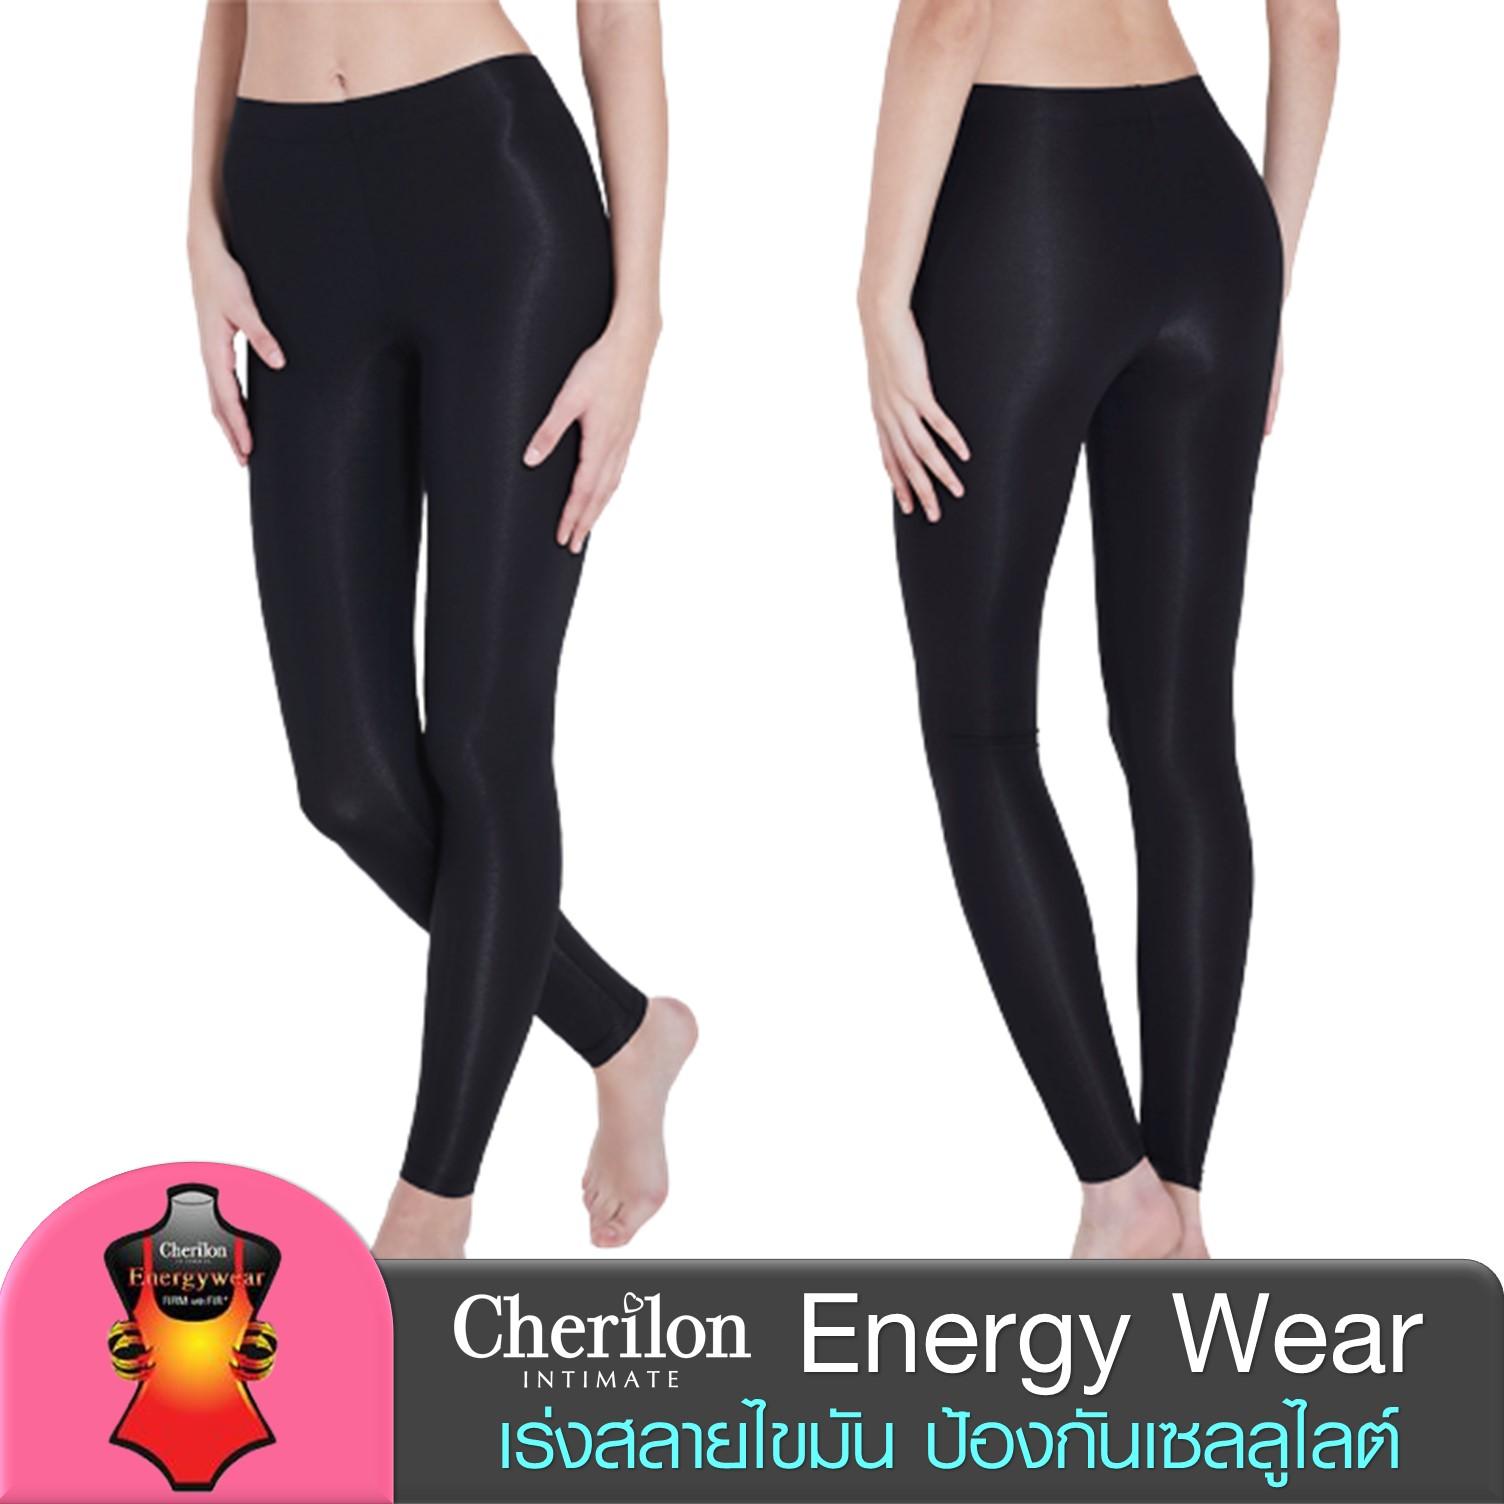 Cherilon Energy Wear กางเกงกระชับสัดส่วน หลัง ดูดไขมัน หลังคลอด ป้องกันเซลลูไลต์ เก็บหน้าท้อง ต้นขา 3 แบบ 2 สี NIC-SWEN